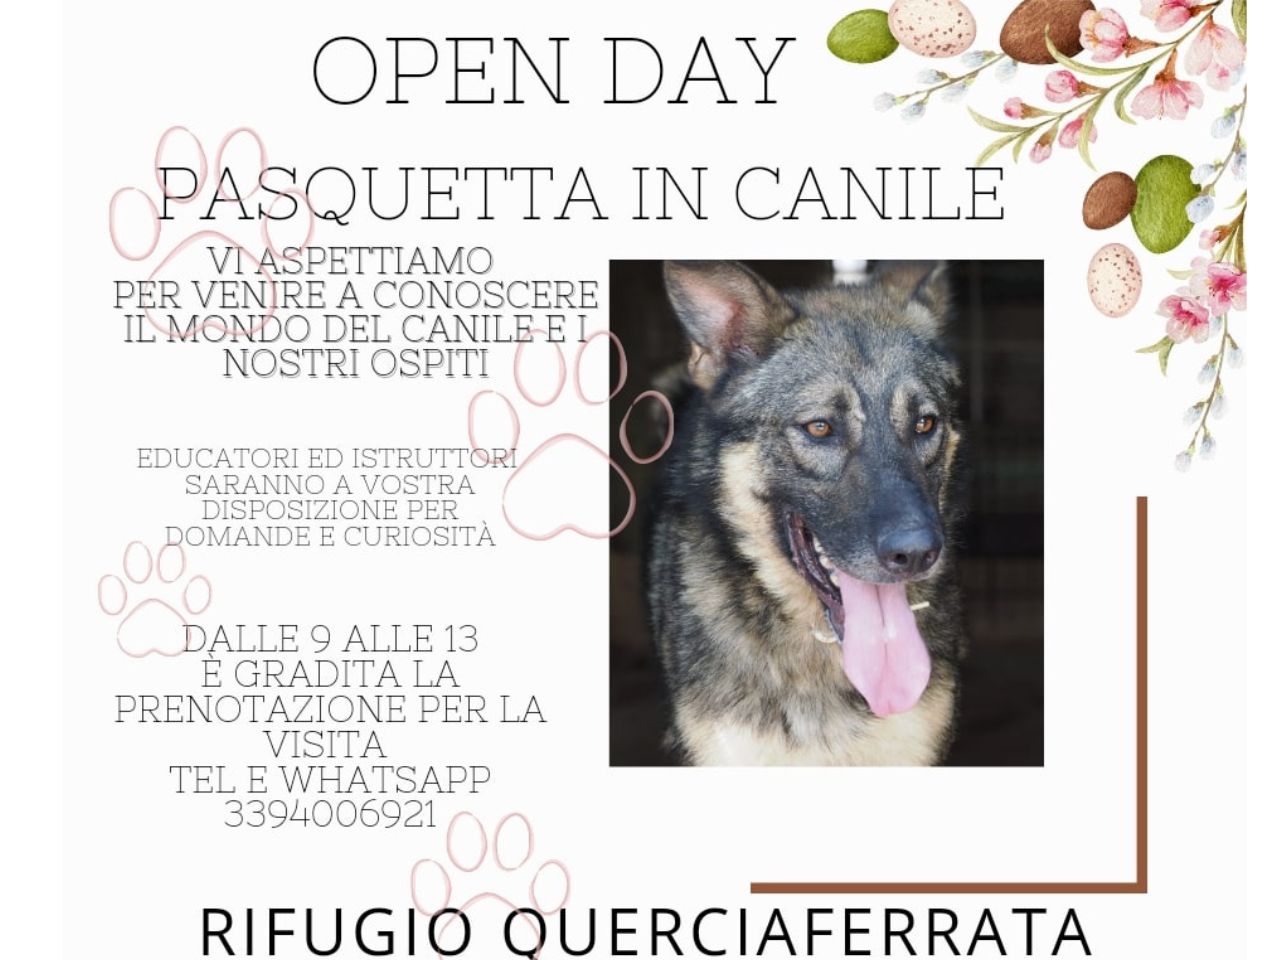 Canile di San Benedetto del Tronto, a Pasquetta l’open day per scoprire il rifugio per animali